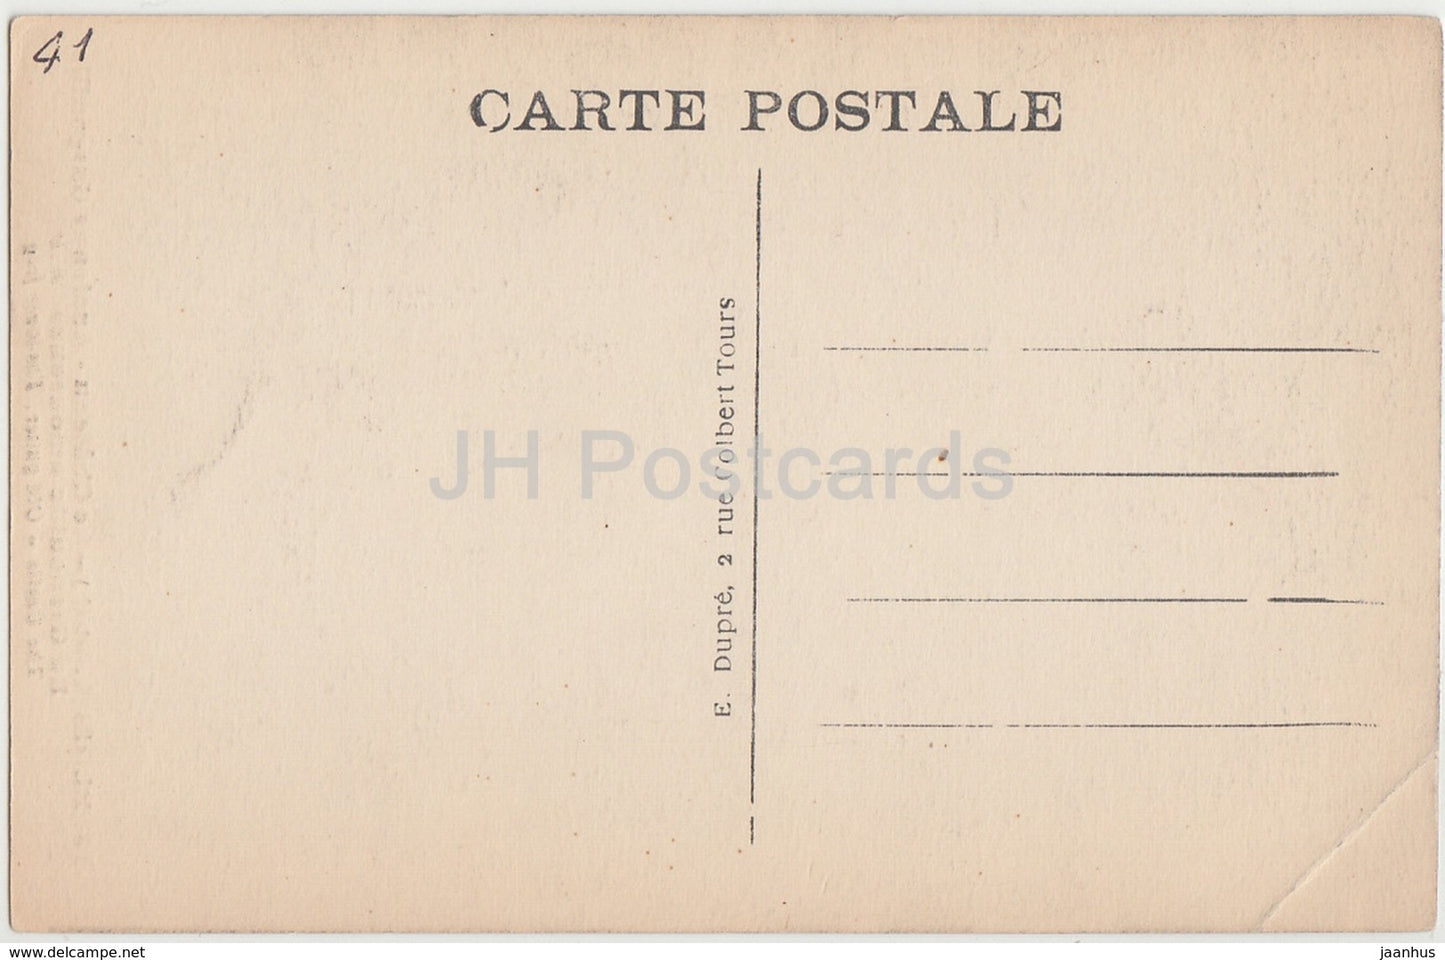 Blois - Le Chateau - Ancienne Gargouille - La Grenouille amoureuse - Schloss - 78 - alte Postkarte - Frankreich - unbenutzt